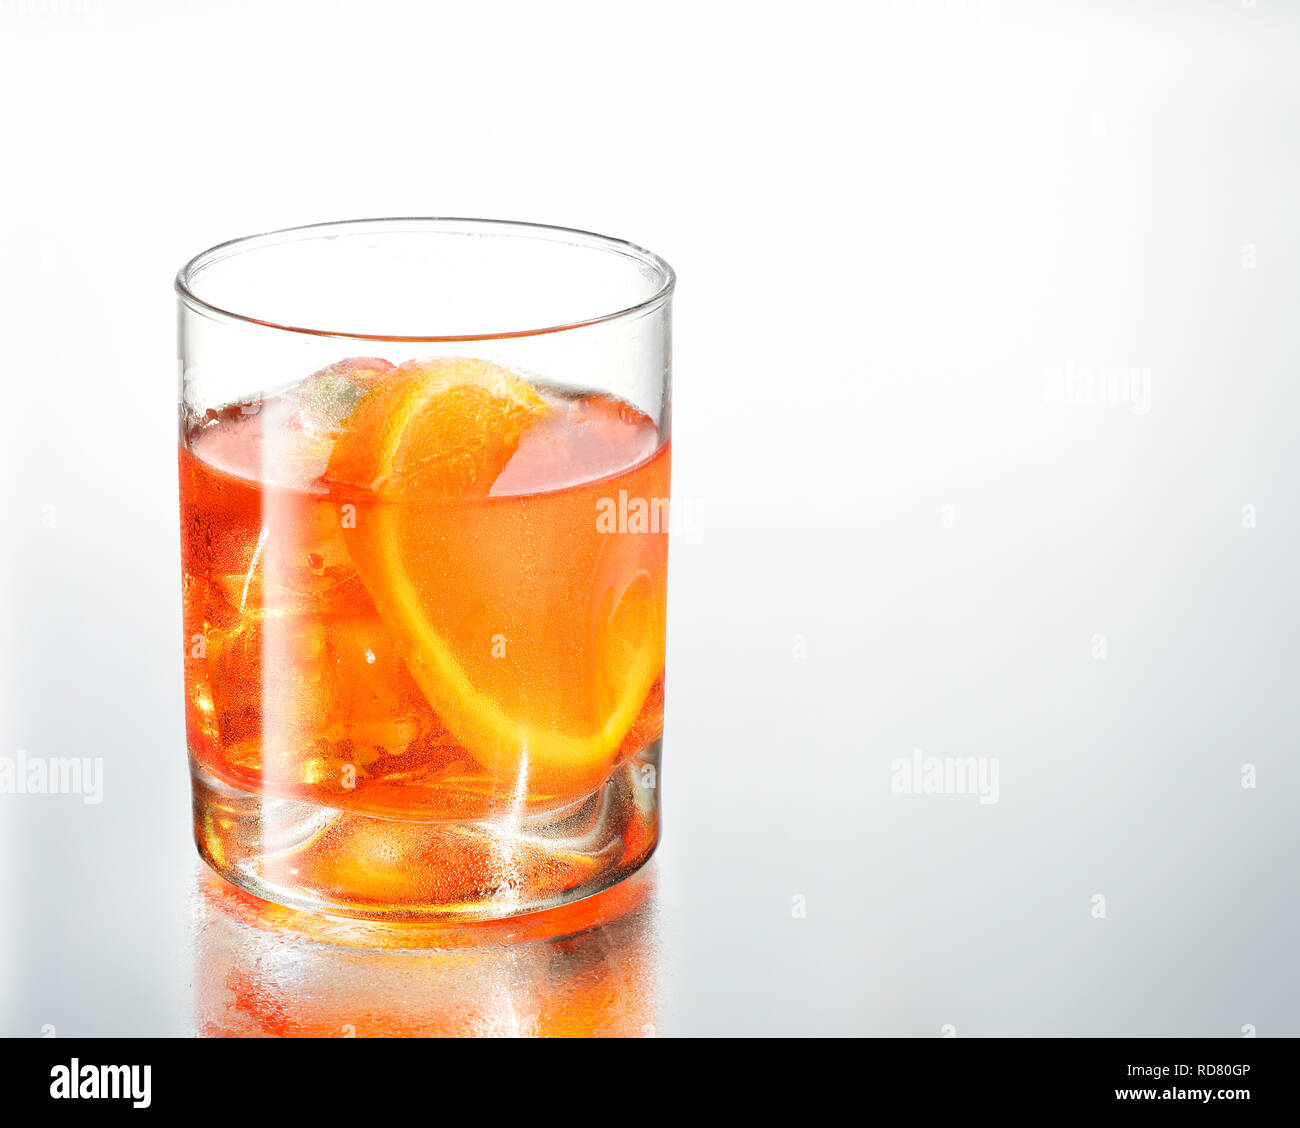 Verre de verre avec une tranche d'orange, studio shot Banque D'Images